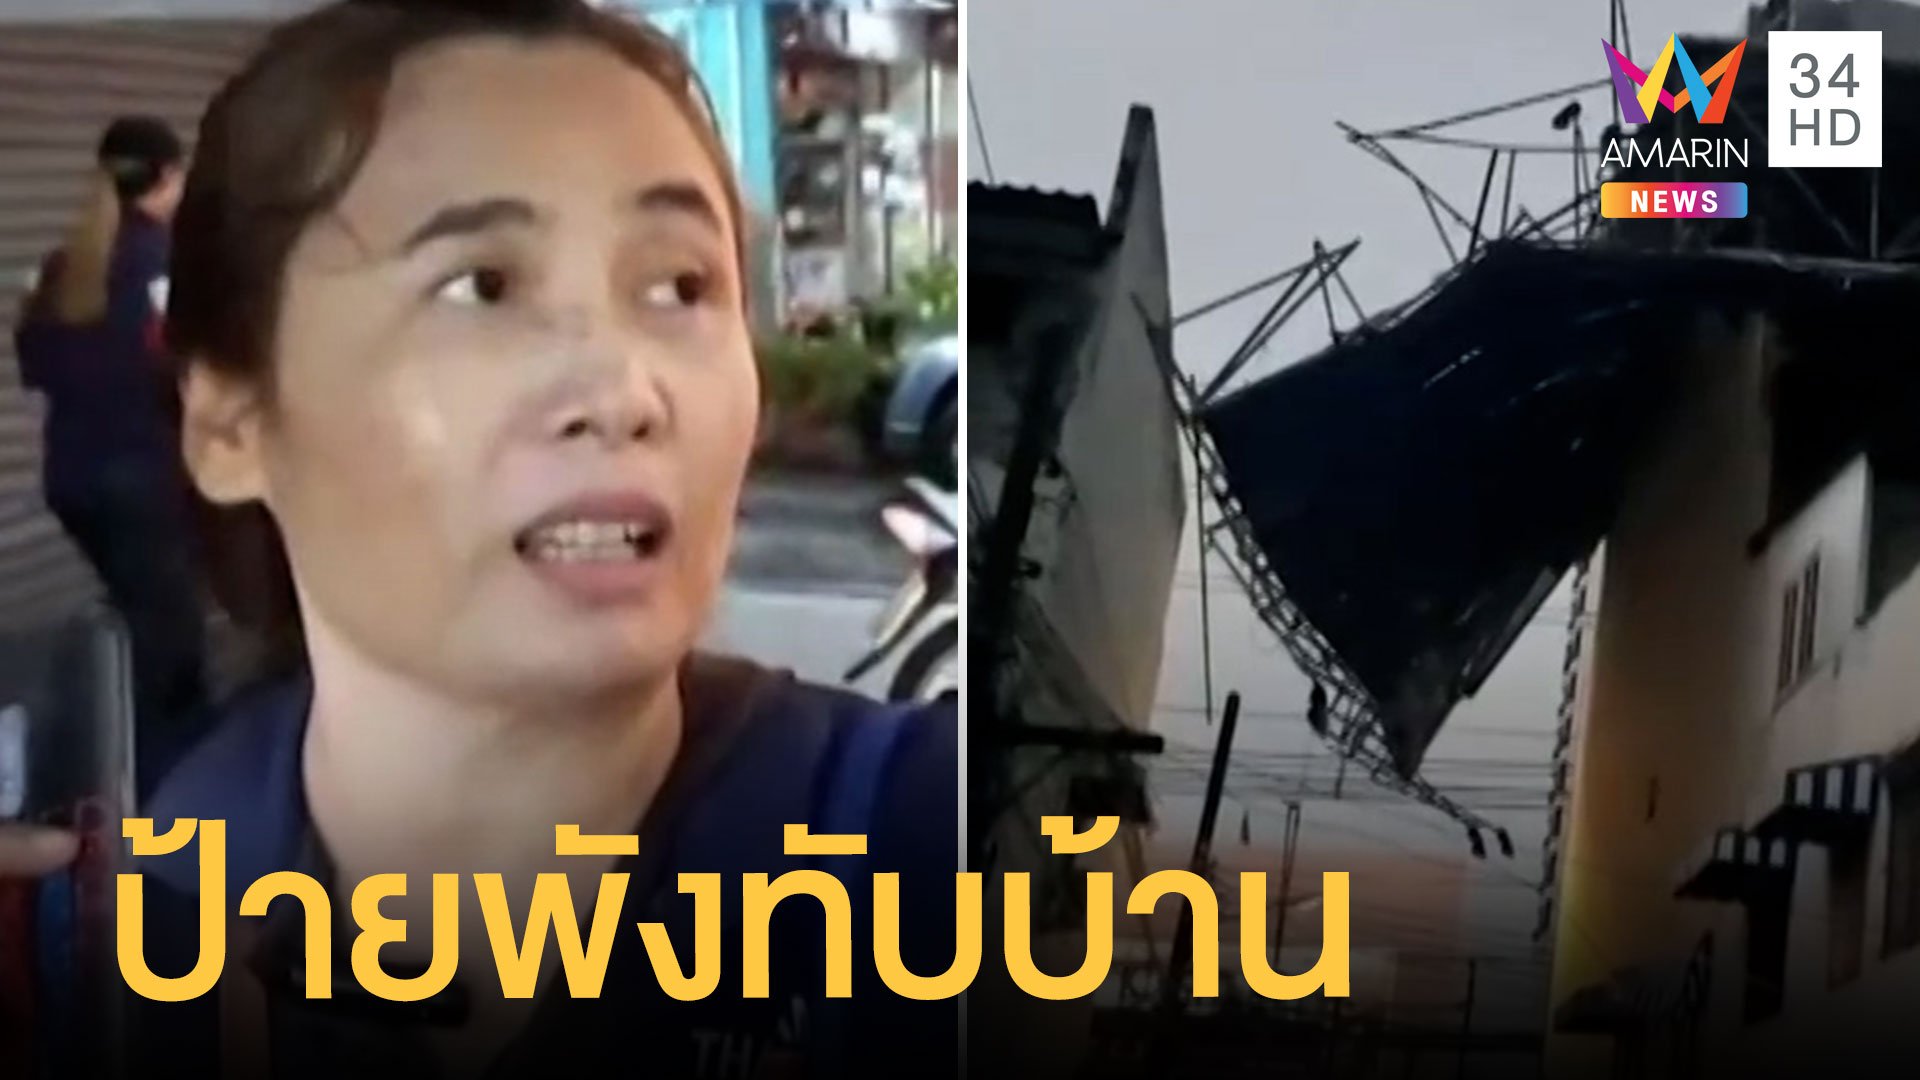 ฝนตกกระหน่ำทั่วไทย ลมพัดป้ายโฆษณาหักทับบ้านพัง  | ข่าวเที่ยงอมรินทร์ | 16 ส.ค. 65 | AMARIN TVHD34